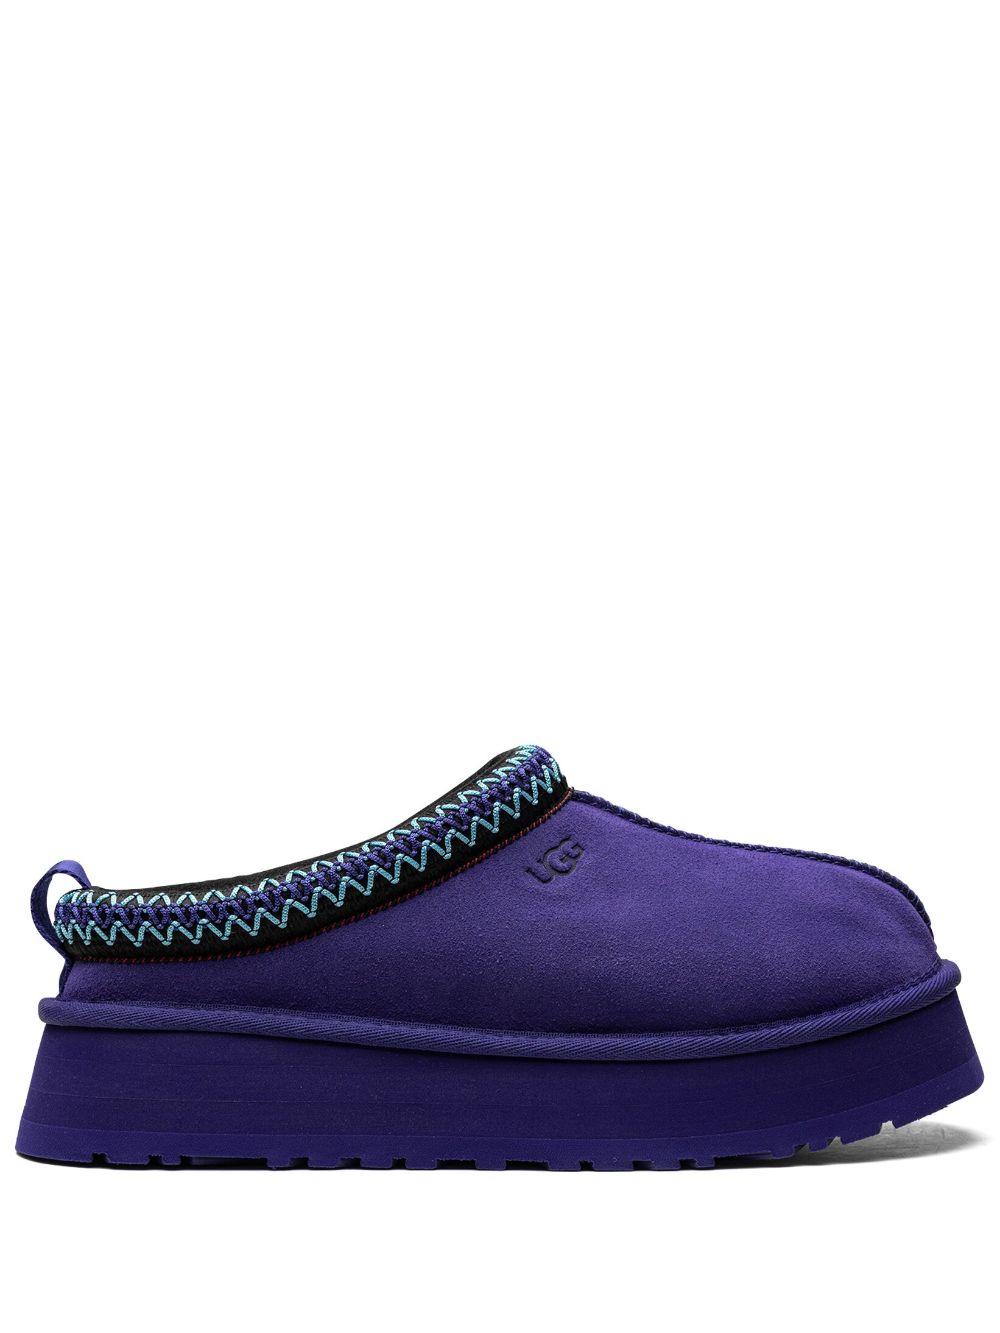 UGG Tazz "Naval Blue" slippers von UGG